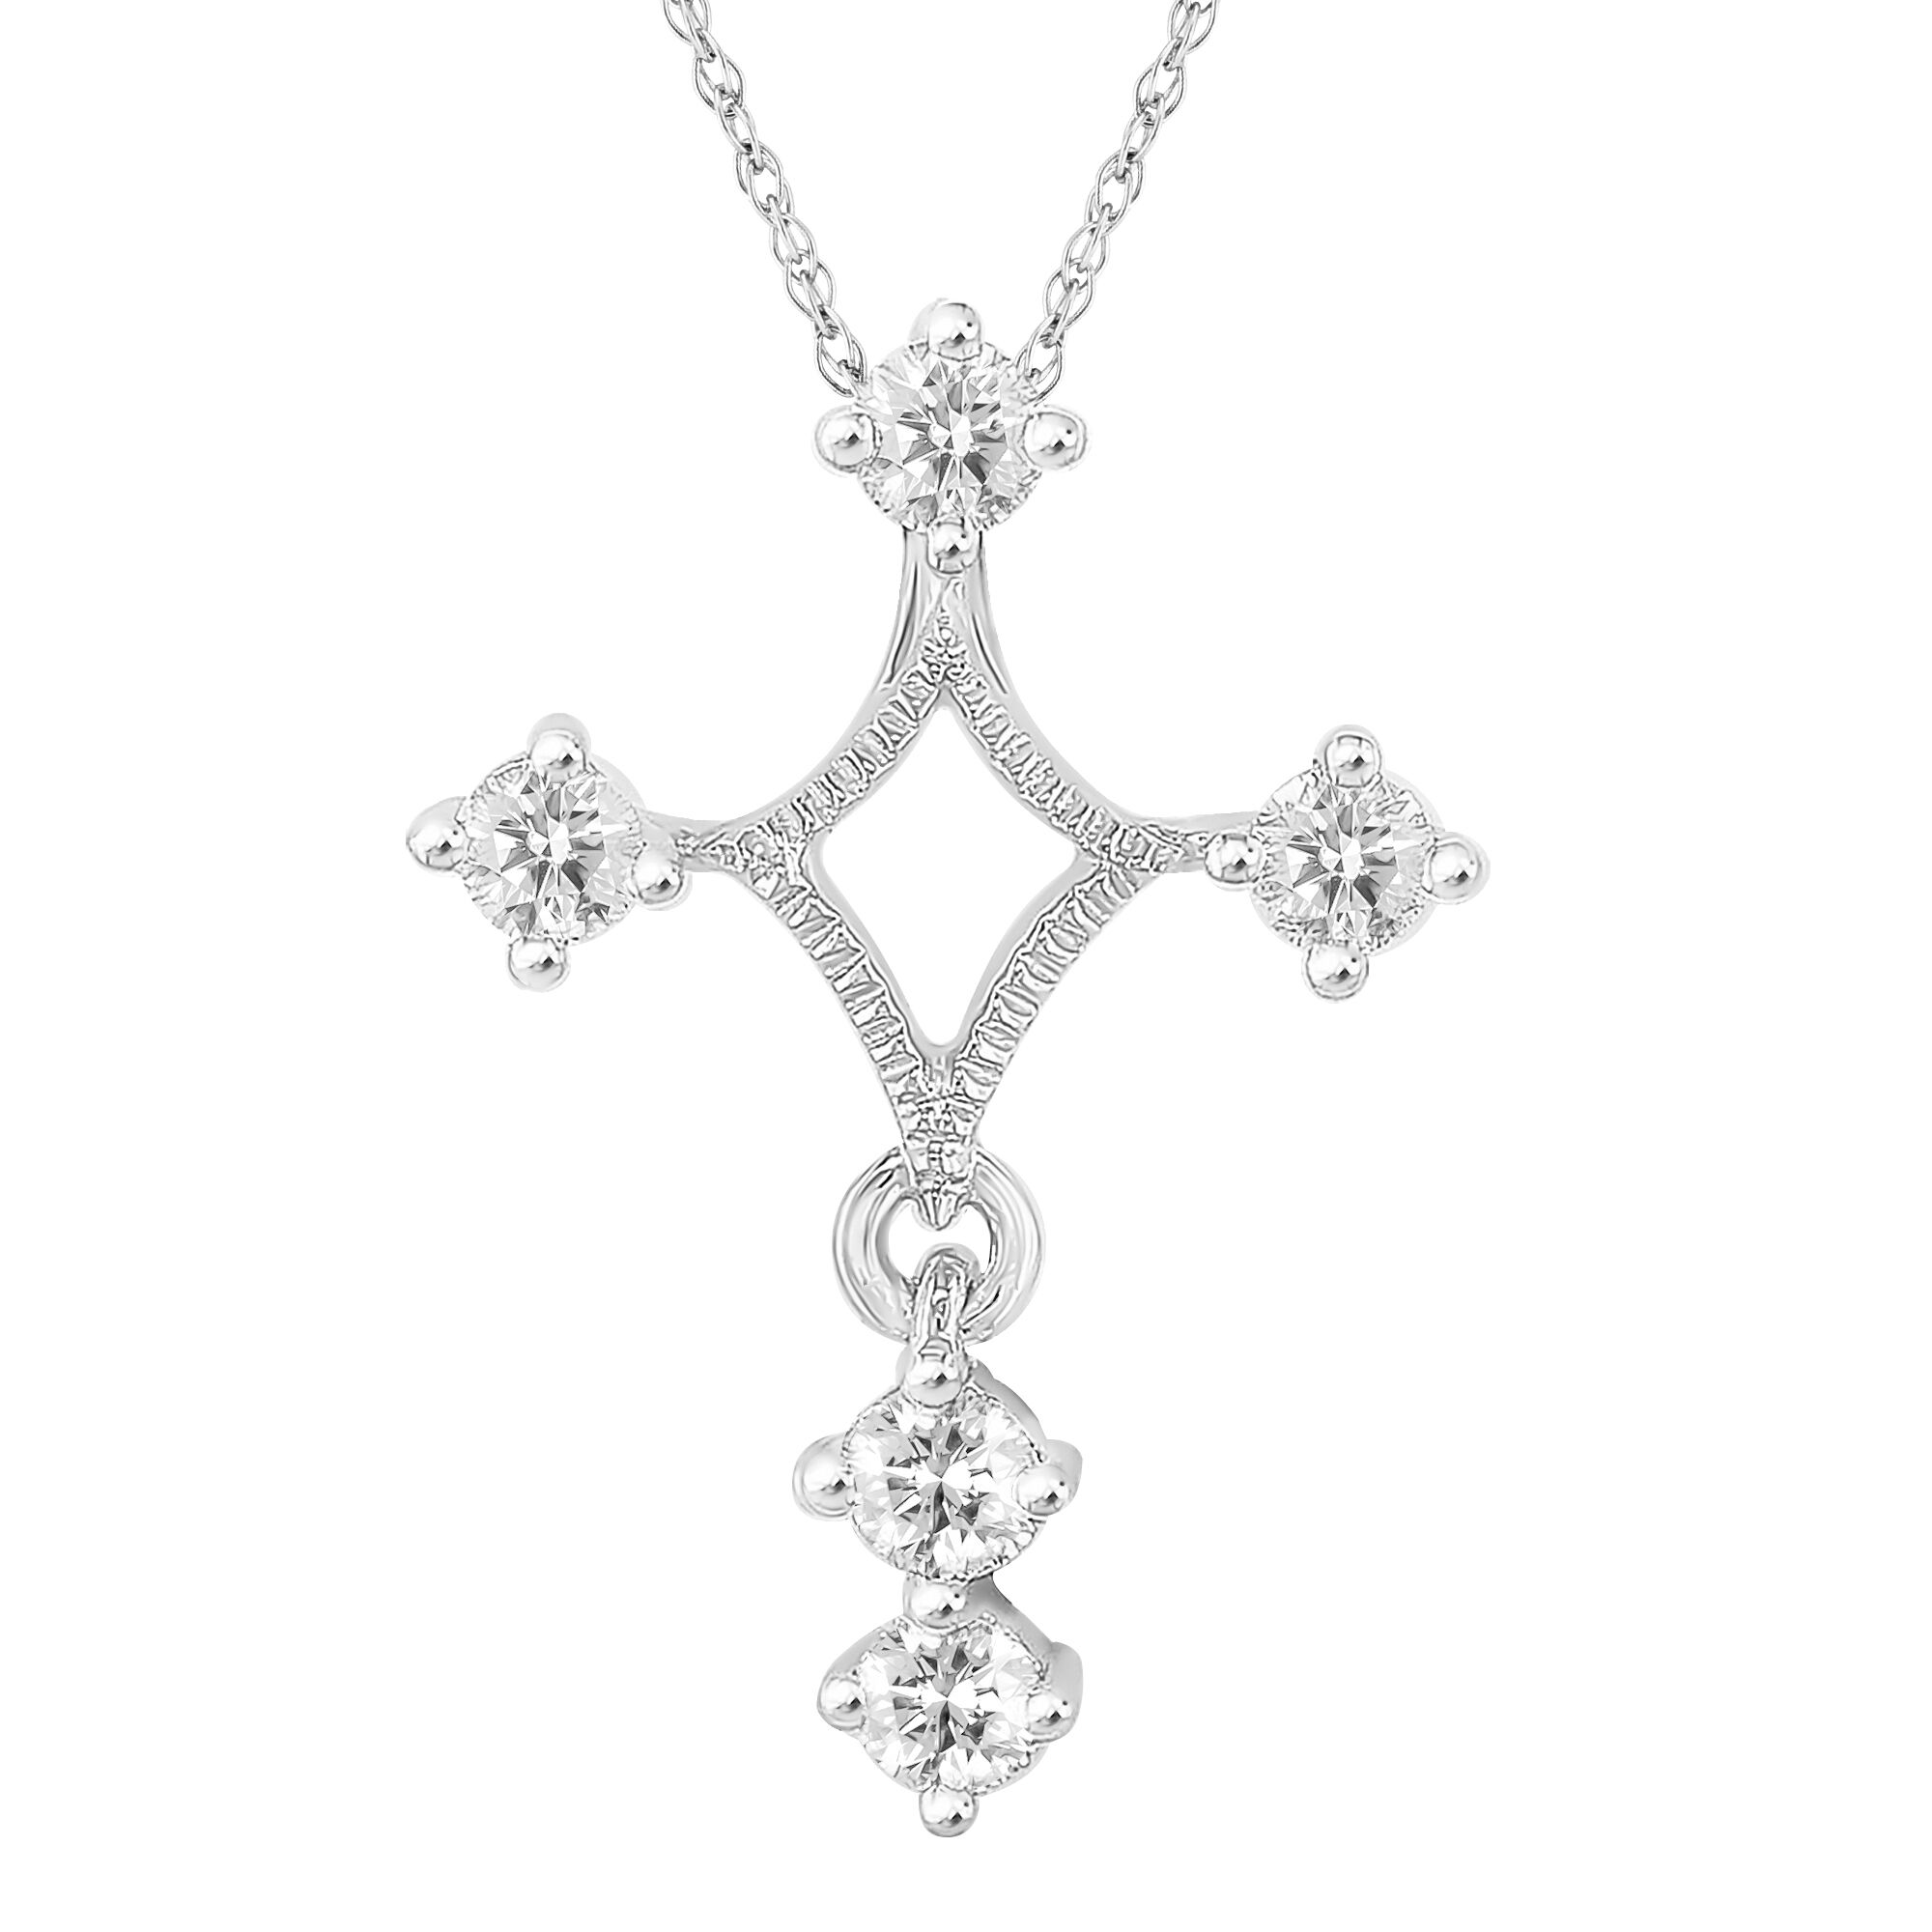 Shop Men's Helzberg Diamonds Necklaces up to 50% Off | DealDoodle